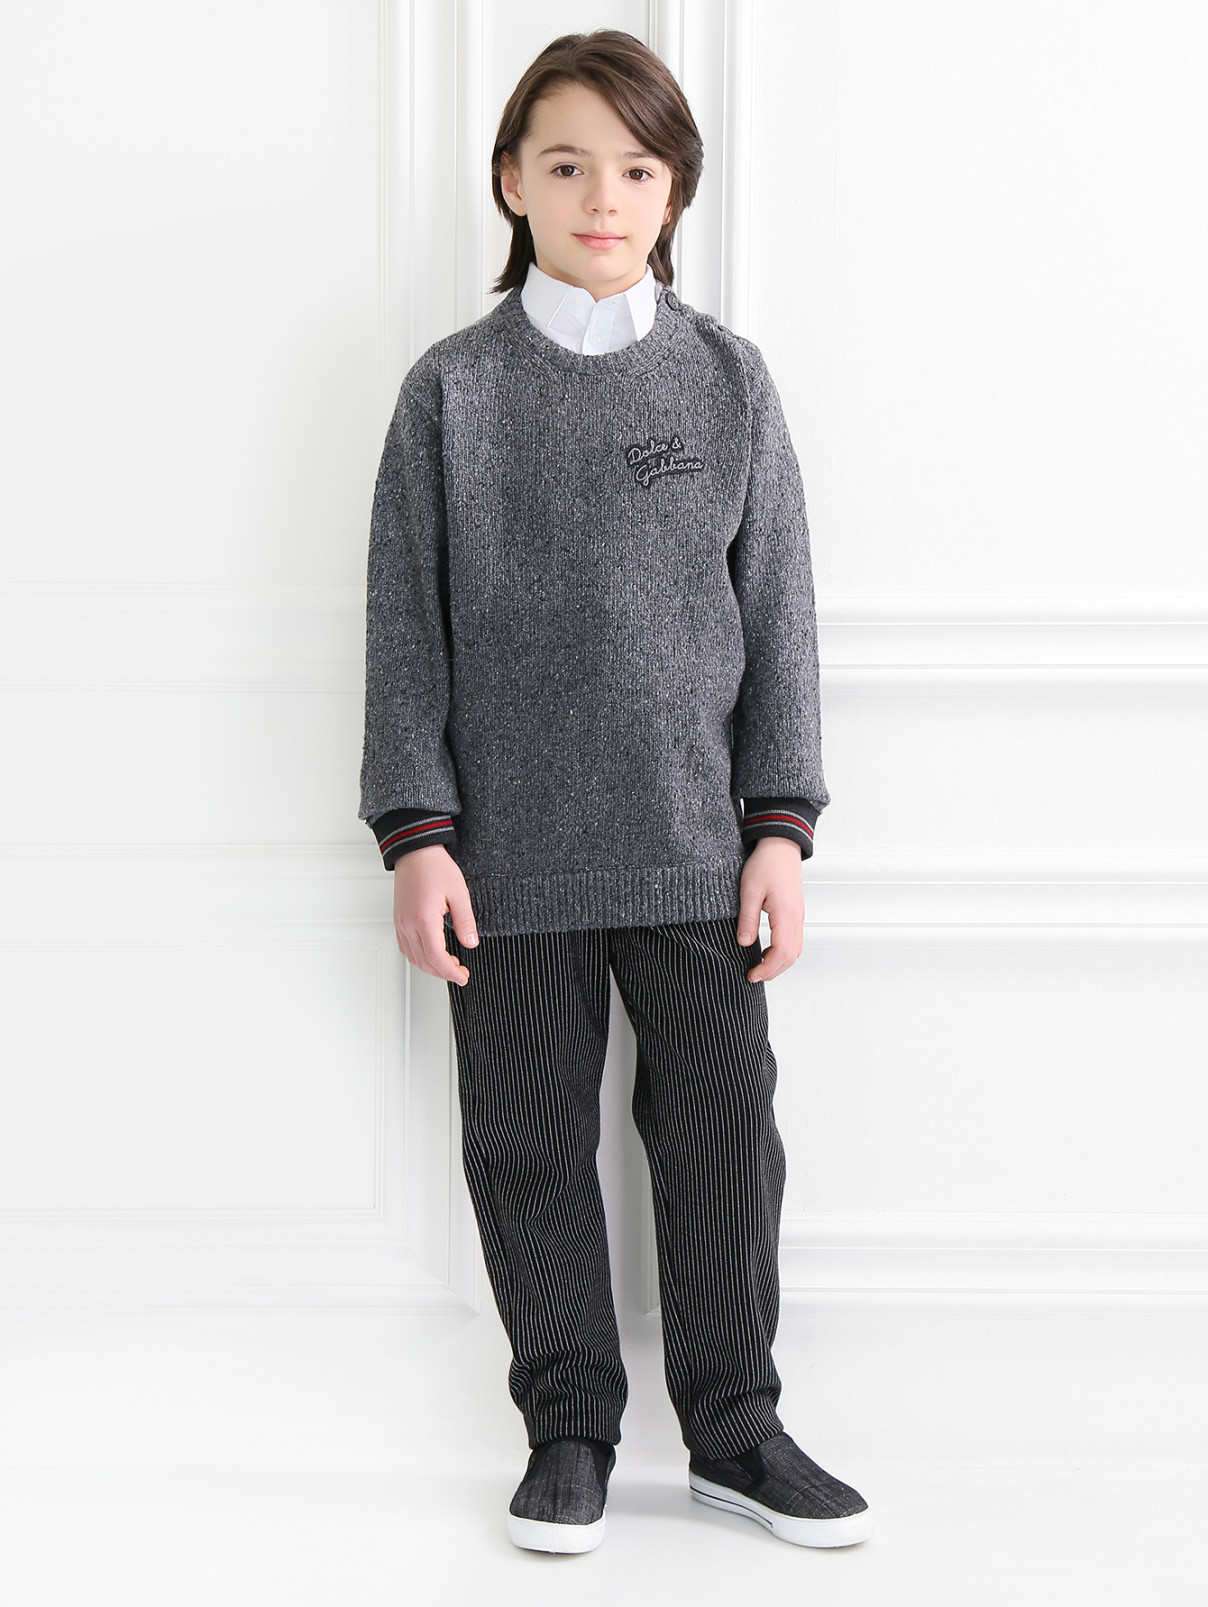 Джемпер из хлопка и шерсти крупной вязки Dolce & Gabbana  –  Модель Общий вид  – Цвет:  Серый